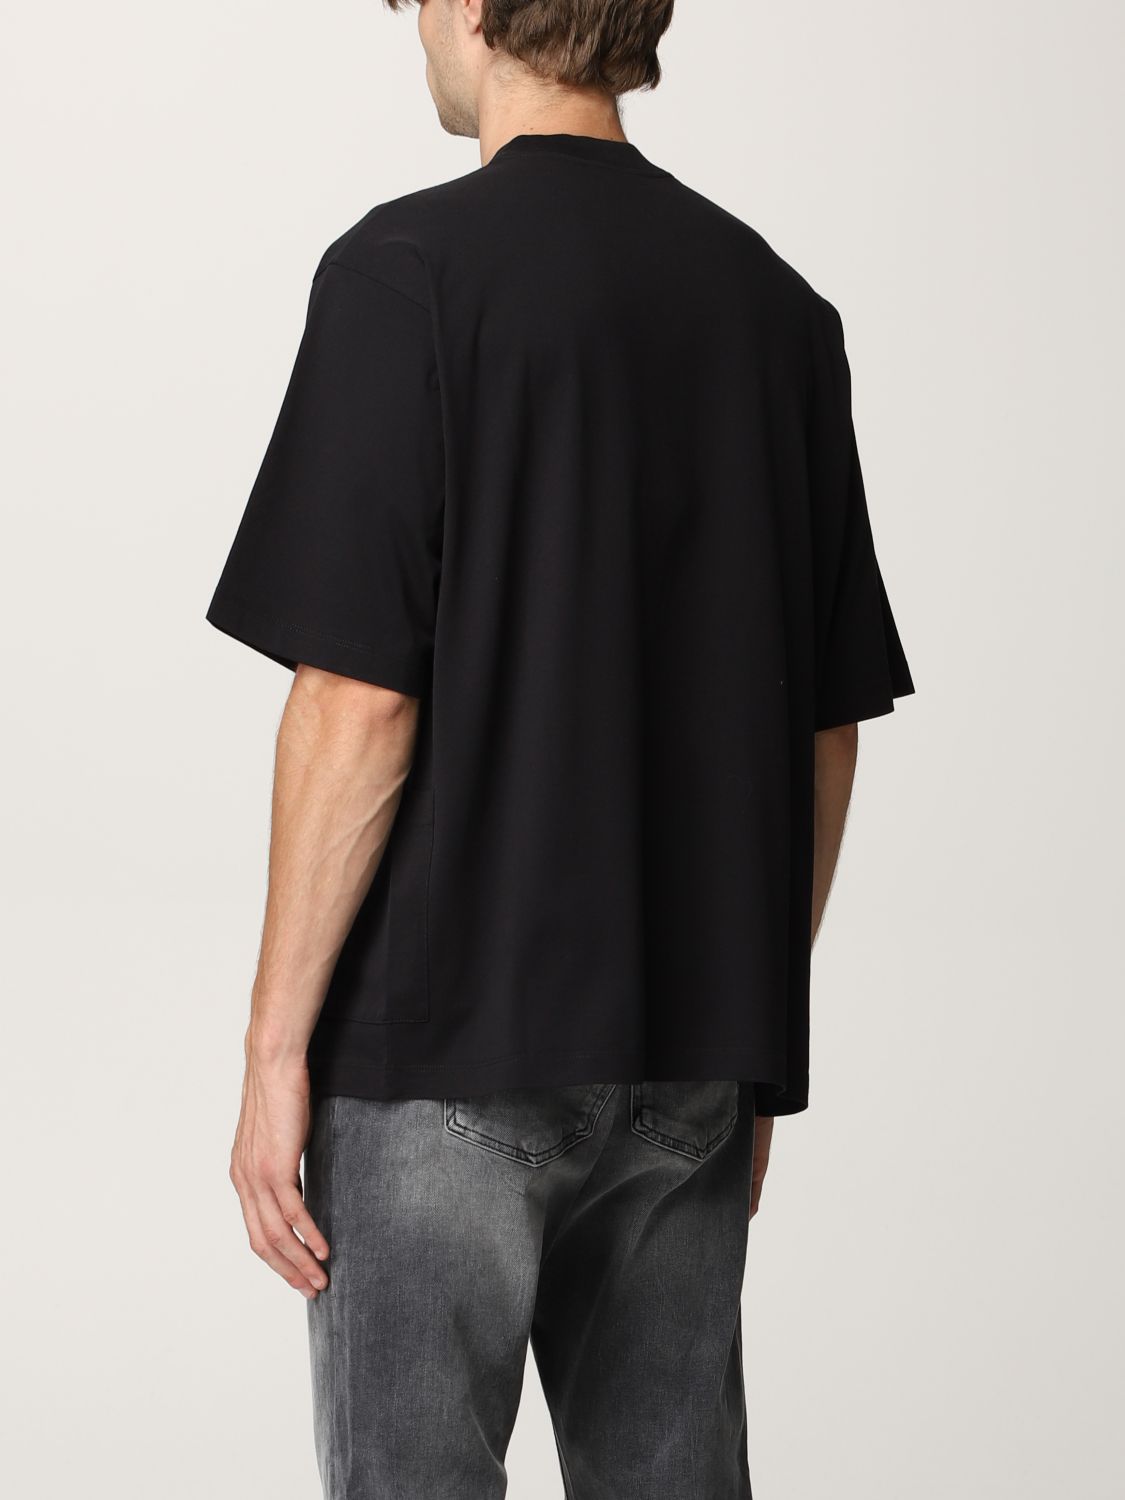 T-shirt Marni: Marni T-shirt in organic cotton jersey black 2